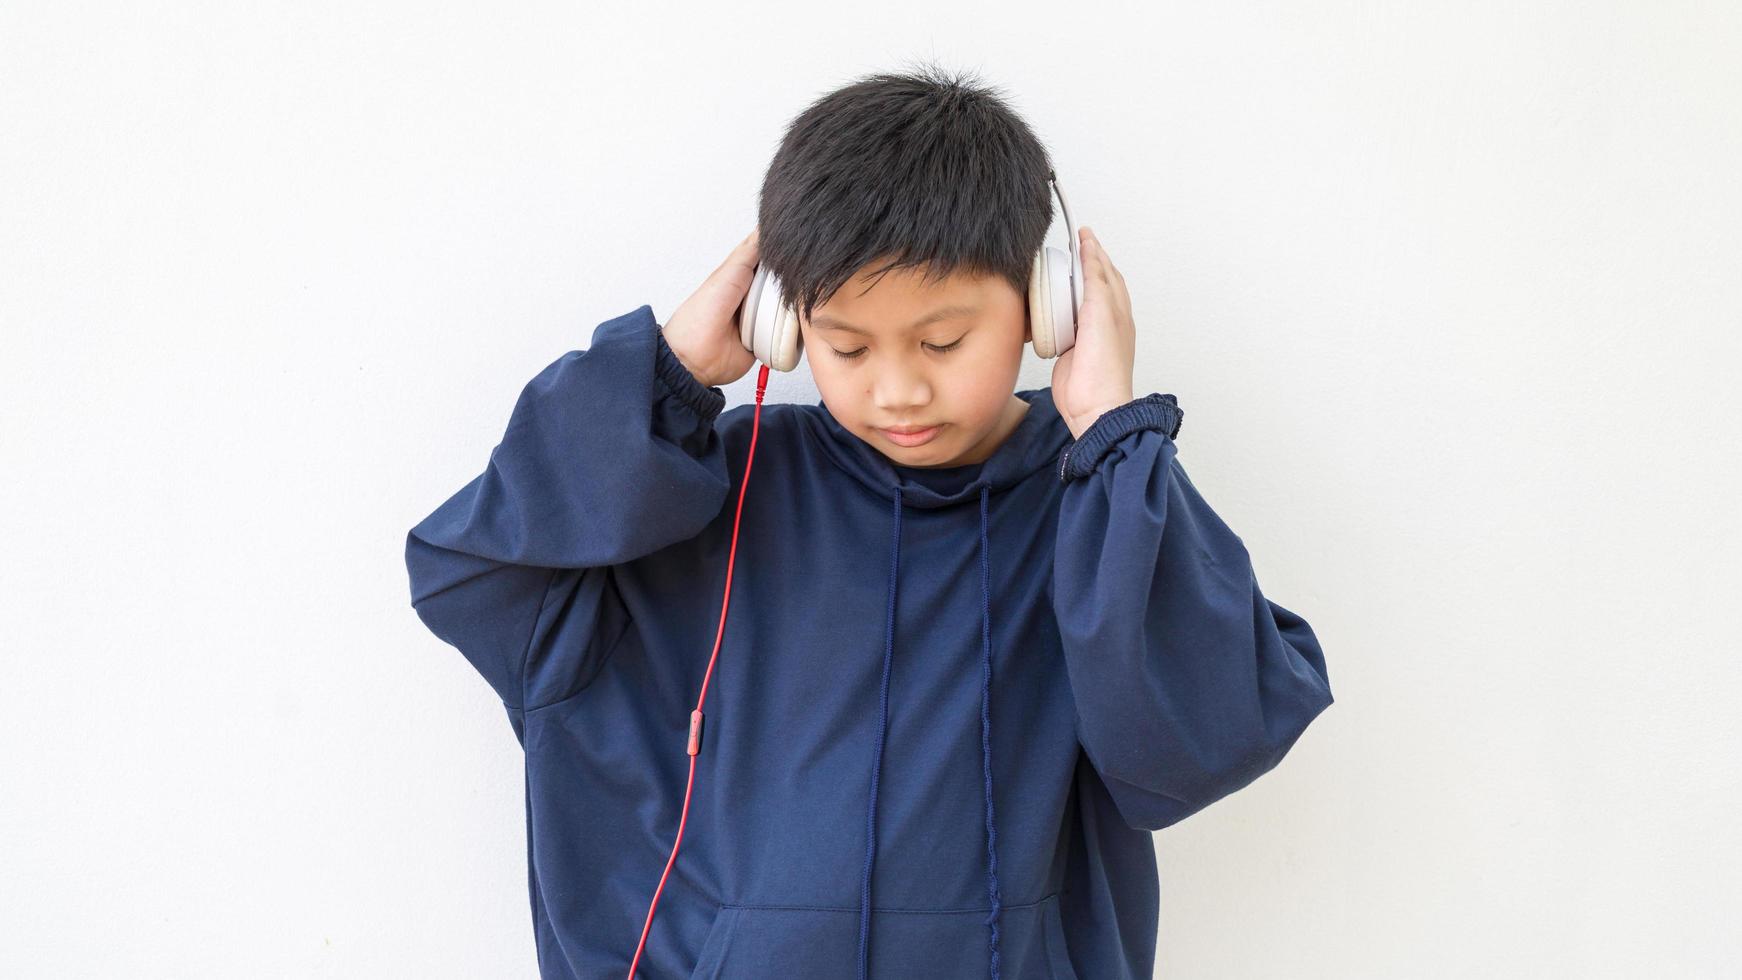 mignon garçon asiatique dans un sweat à capuche posant debout souriant détendu et heureux d'écouter de la musique avec des écouteurs. portrait émotionnel d'un jeune garçon appréciant la musique photo